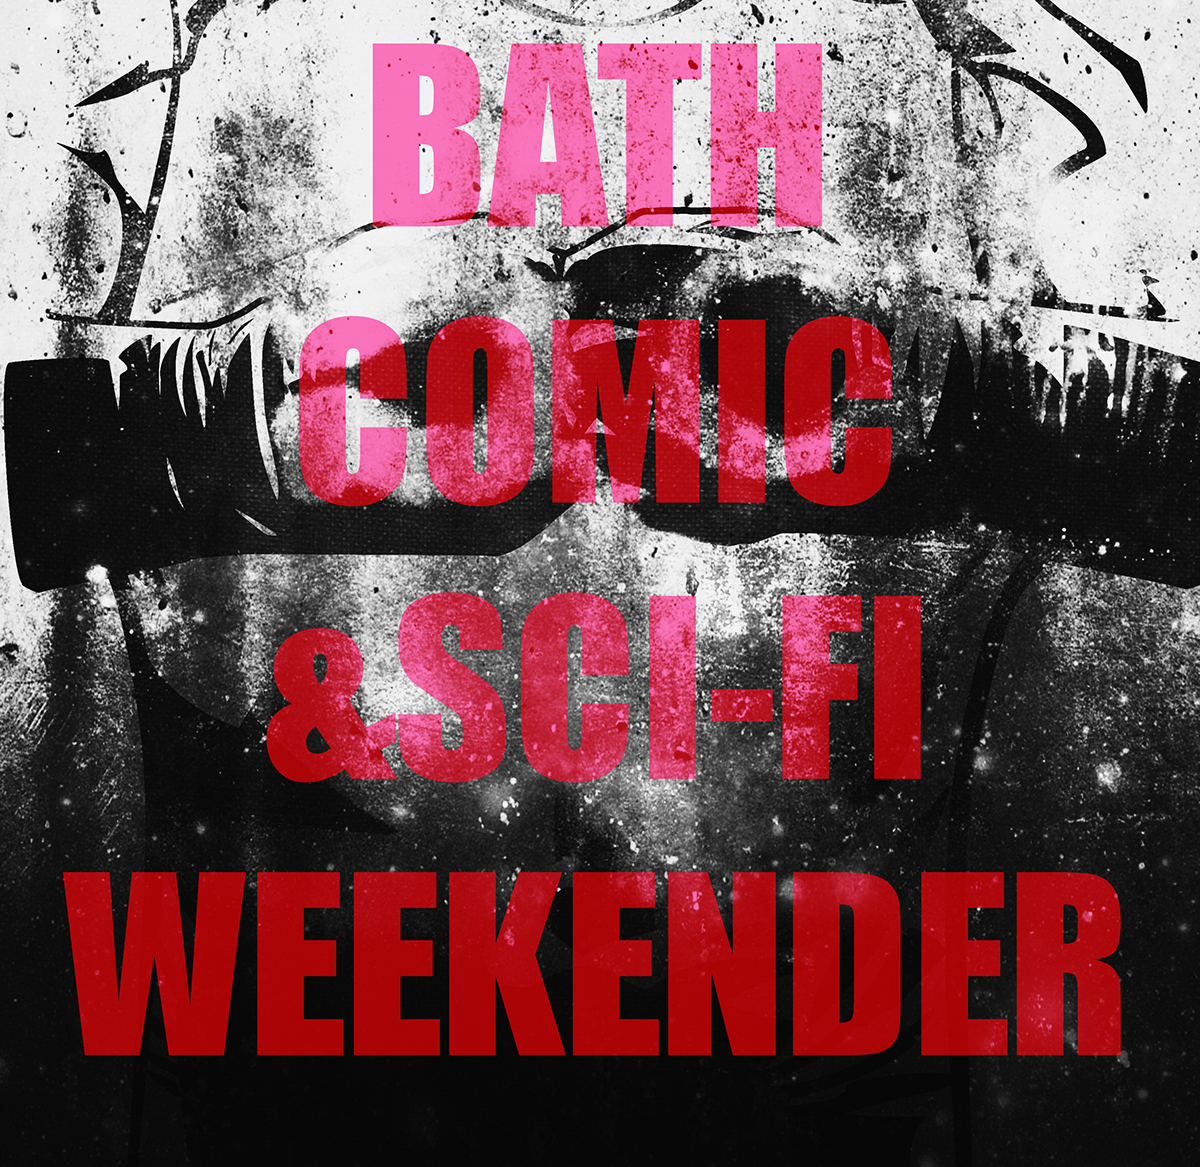 Darkseid Darkside bath bath comic festival Dc Comics comics evil evil won bath comics OBEY omega effect final crisis